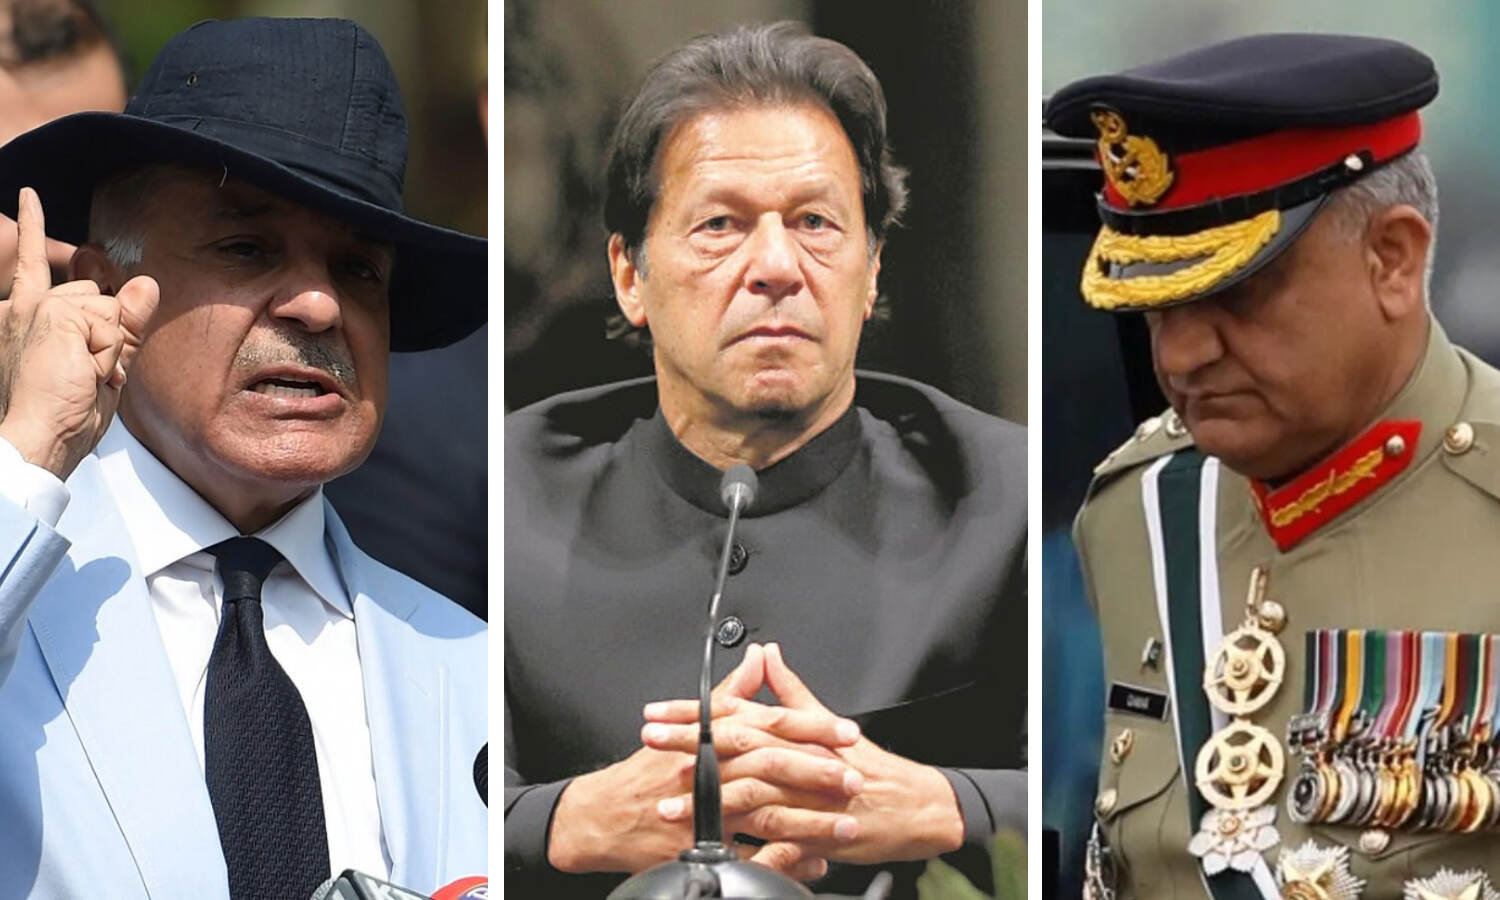 Imran Khan No Confidence Motion : पाकिस्तान में छिड़ सकता है गृह युद्ध, शहबाज शरीफ की चेतावनी, जनरल बाजवा ने संभाला मोर्चा